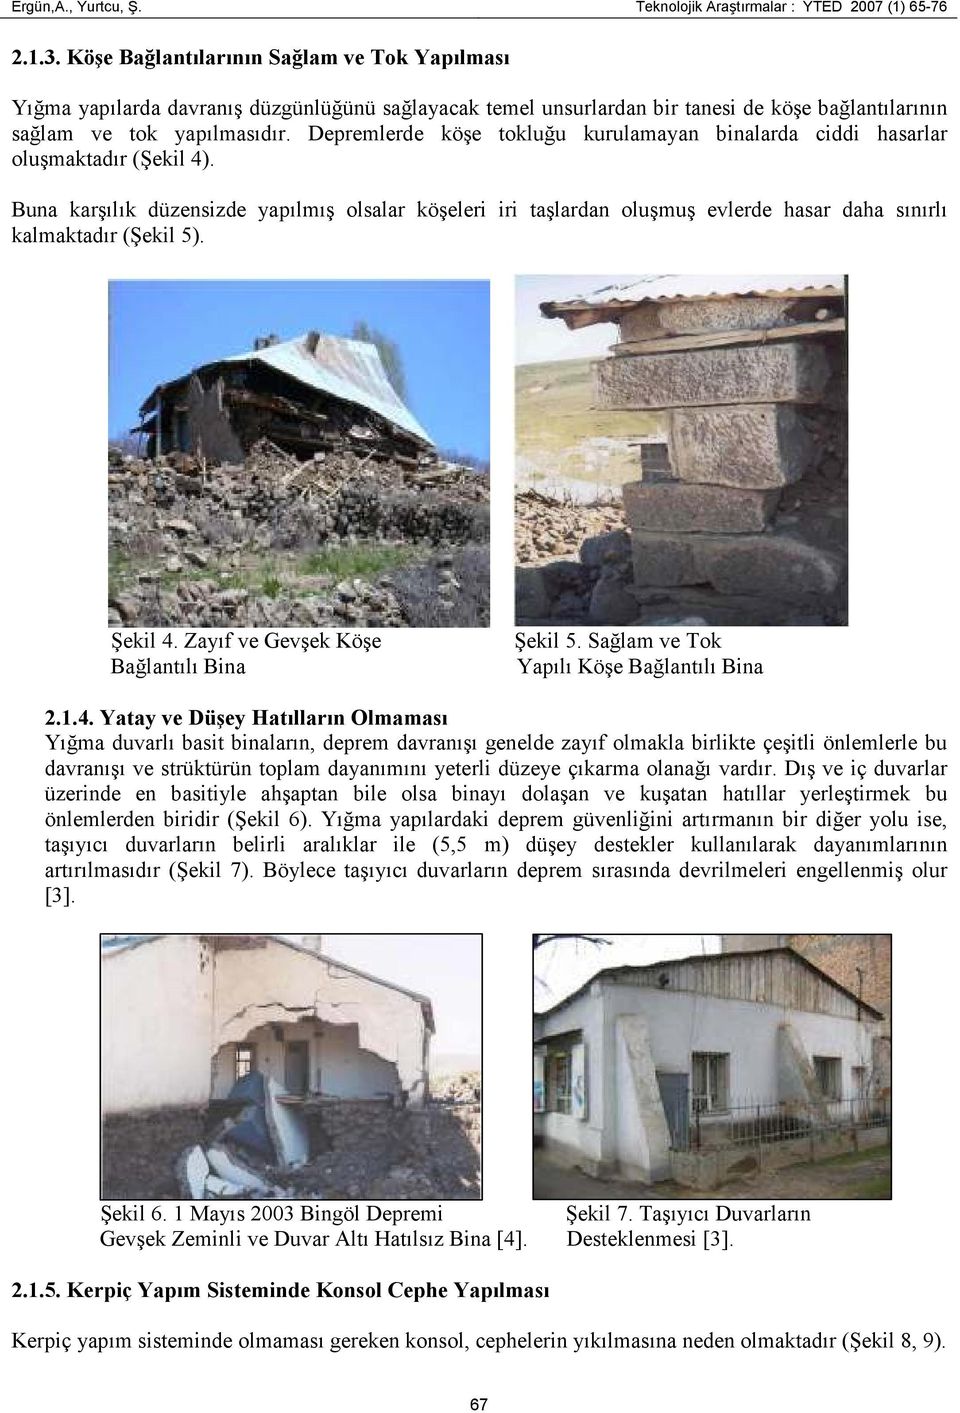 Depremlerde köşe tokluğu kurulamayan binalarda ciddi hasarlar oluşmaktadır (Şekil 4).